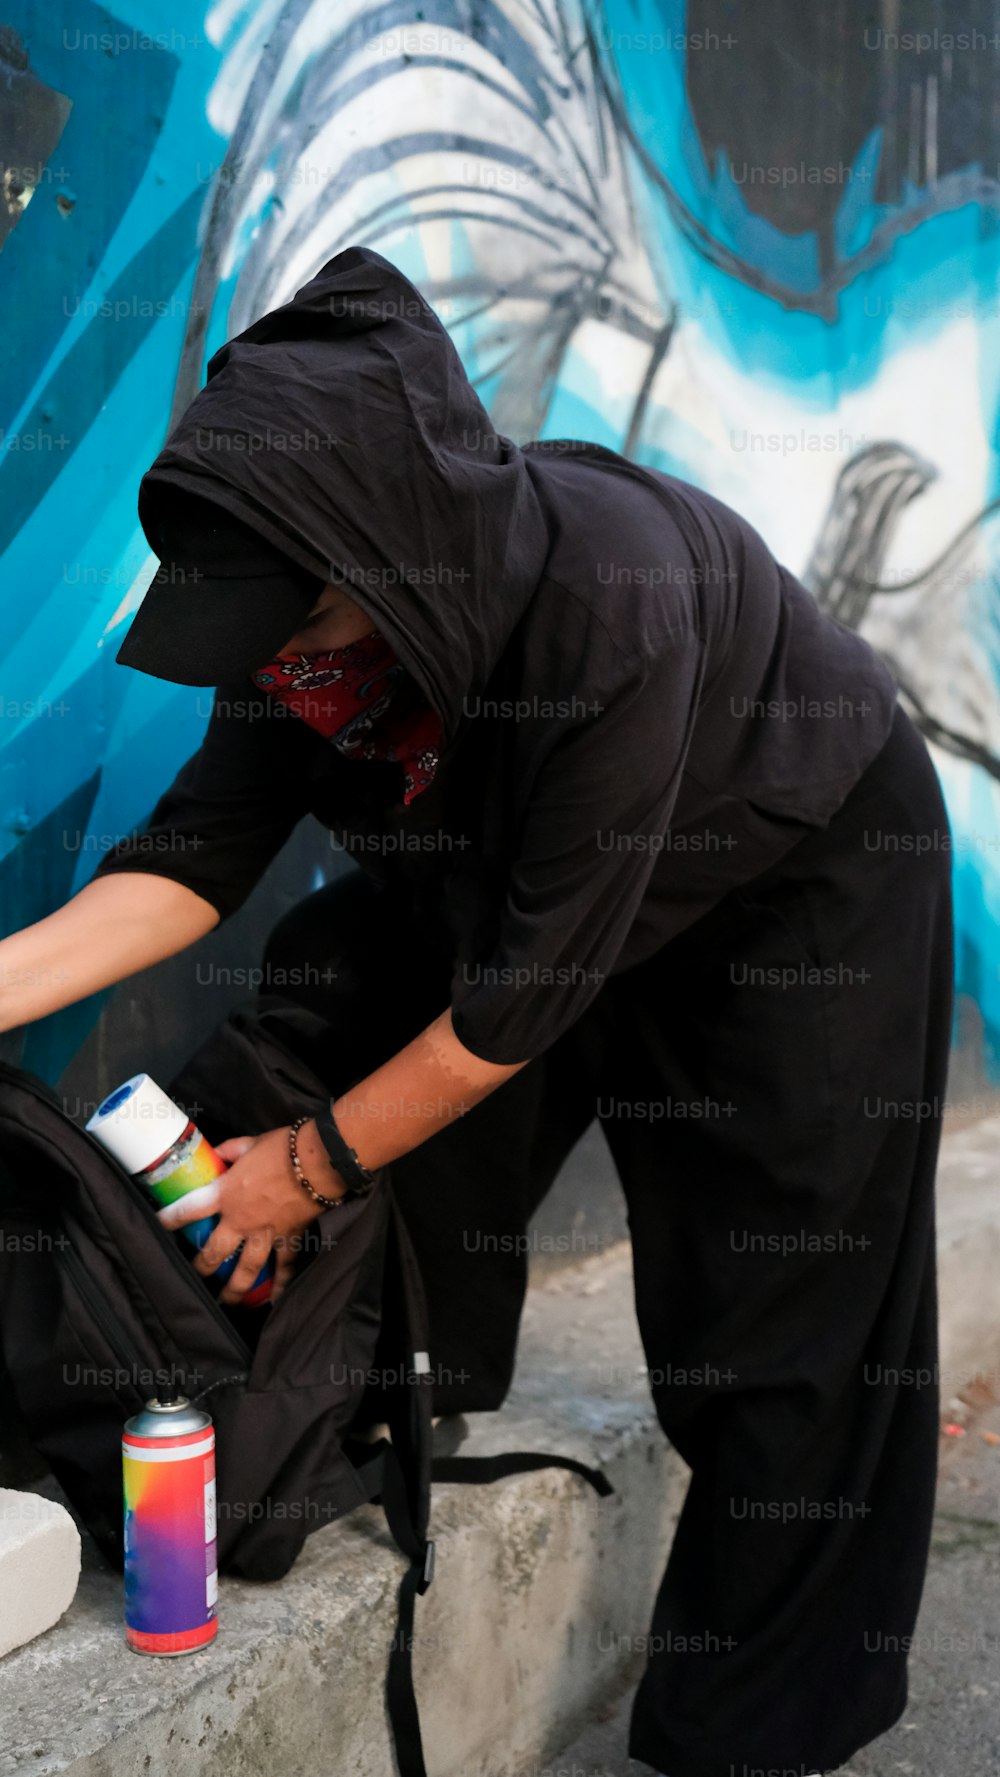 eine Person in einem schwarzen Outfit, die eine Wand streicht